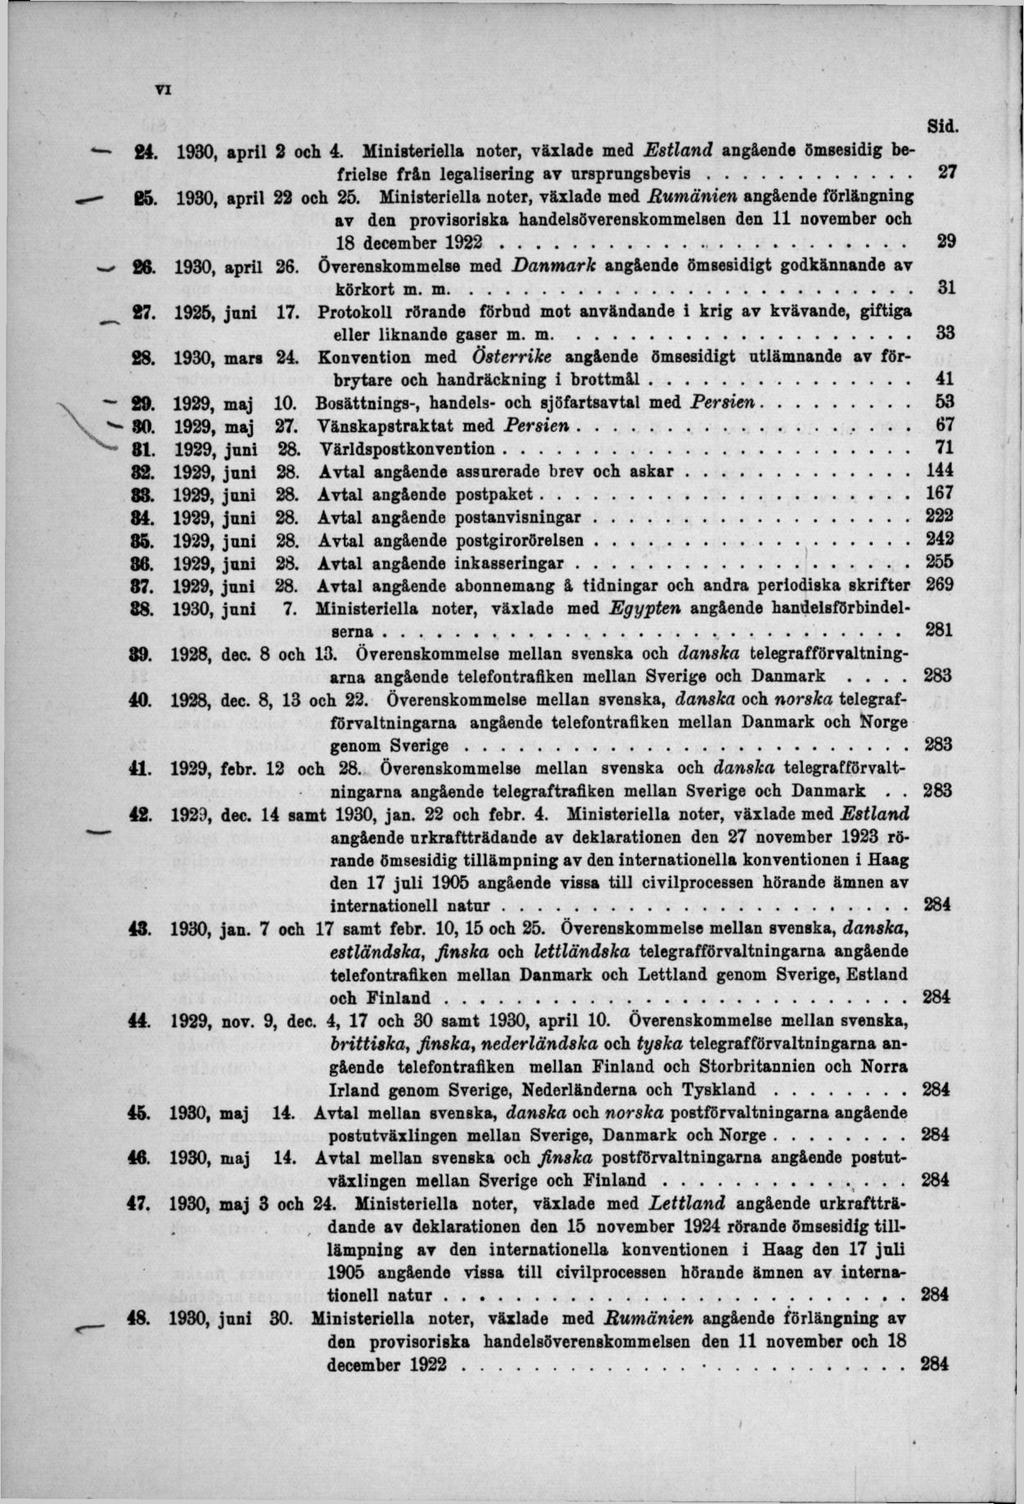 Sid. 84, 1930, april 2 och 4. MiniBteriella noter, växlade med Estland angående ömsesidig befrielse från legalisering av nrsprungsbevis... 27 85. 1980, april 22 och 25.